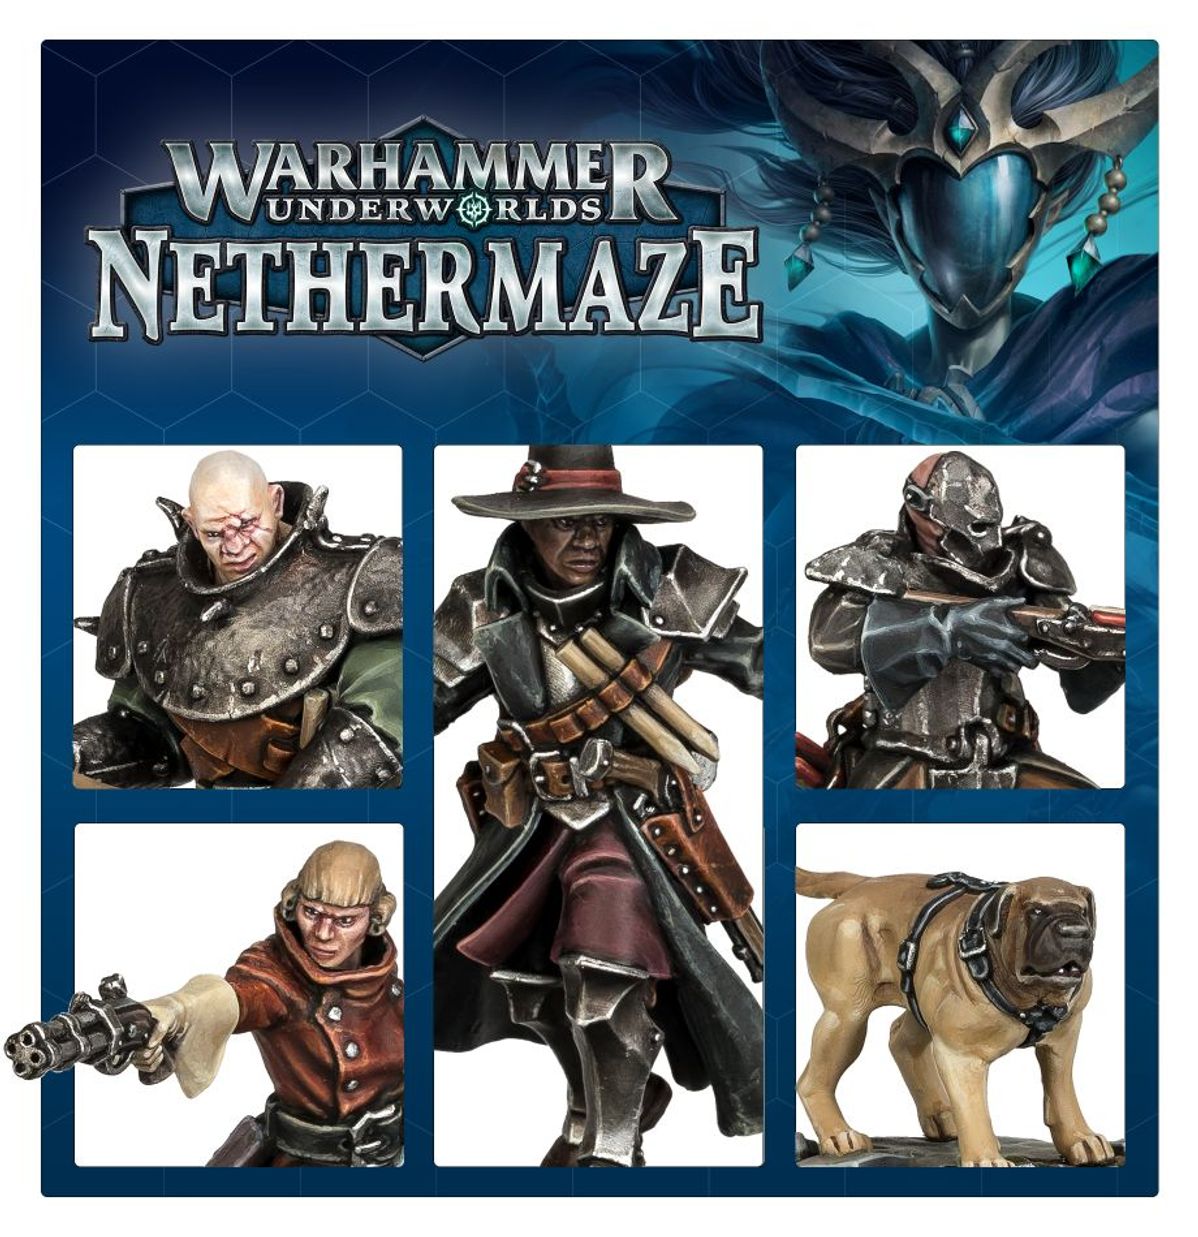 Warhammer Underworlds: Nethermaze: Hexbane